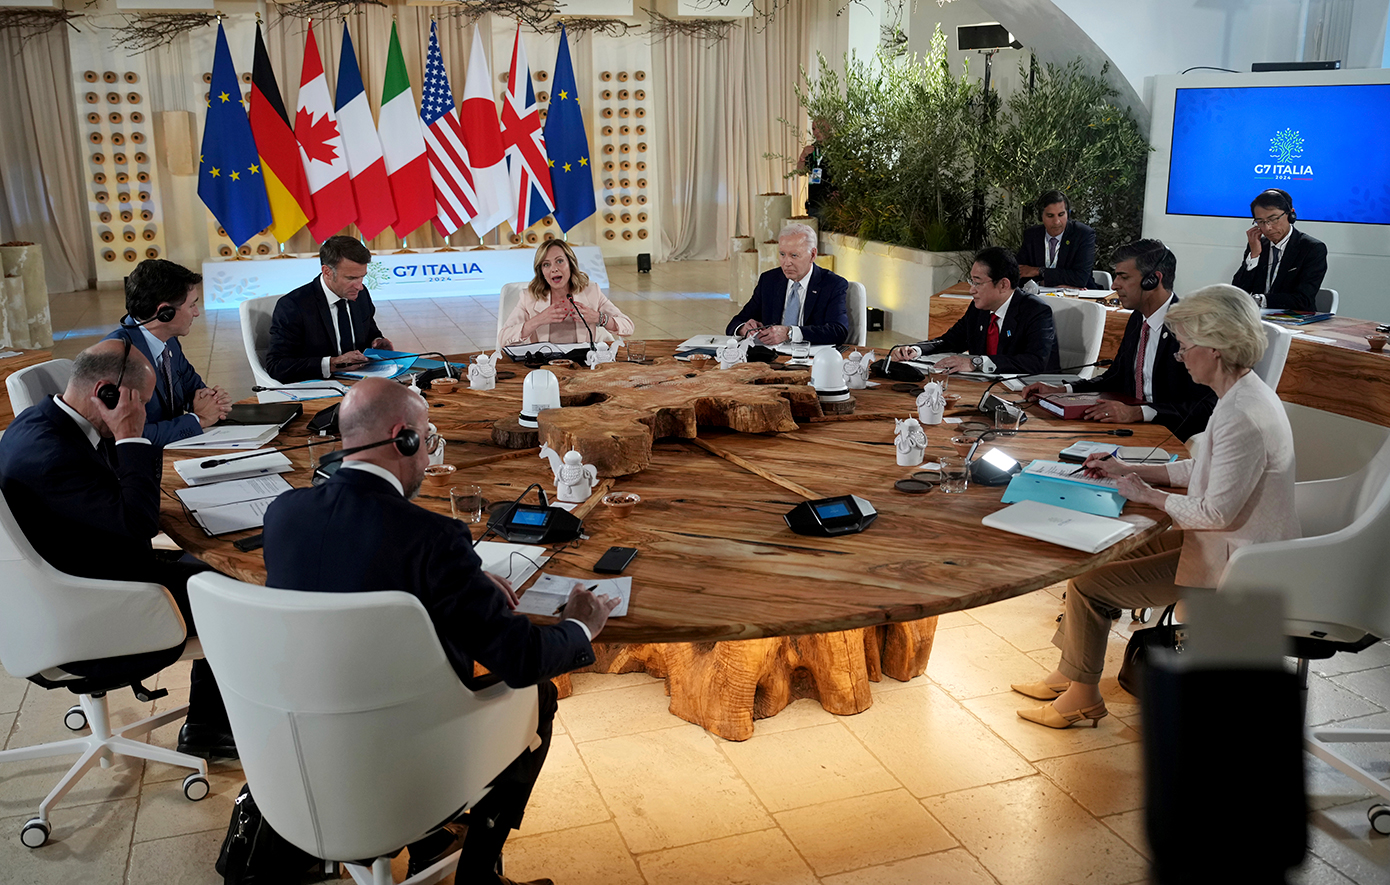 Εξαφανίστηκε κάθε αναφορά στη λέξη «άμβλωση» από το προσχέδιο συμπερασμάτων της G7